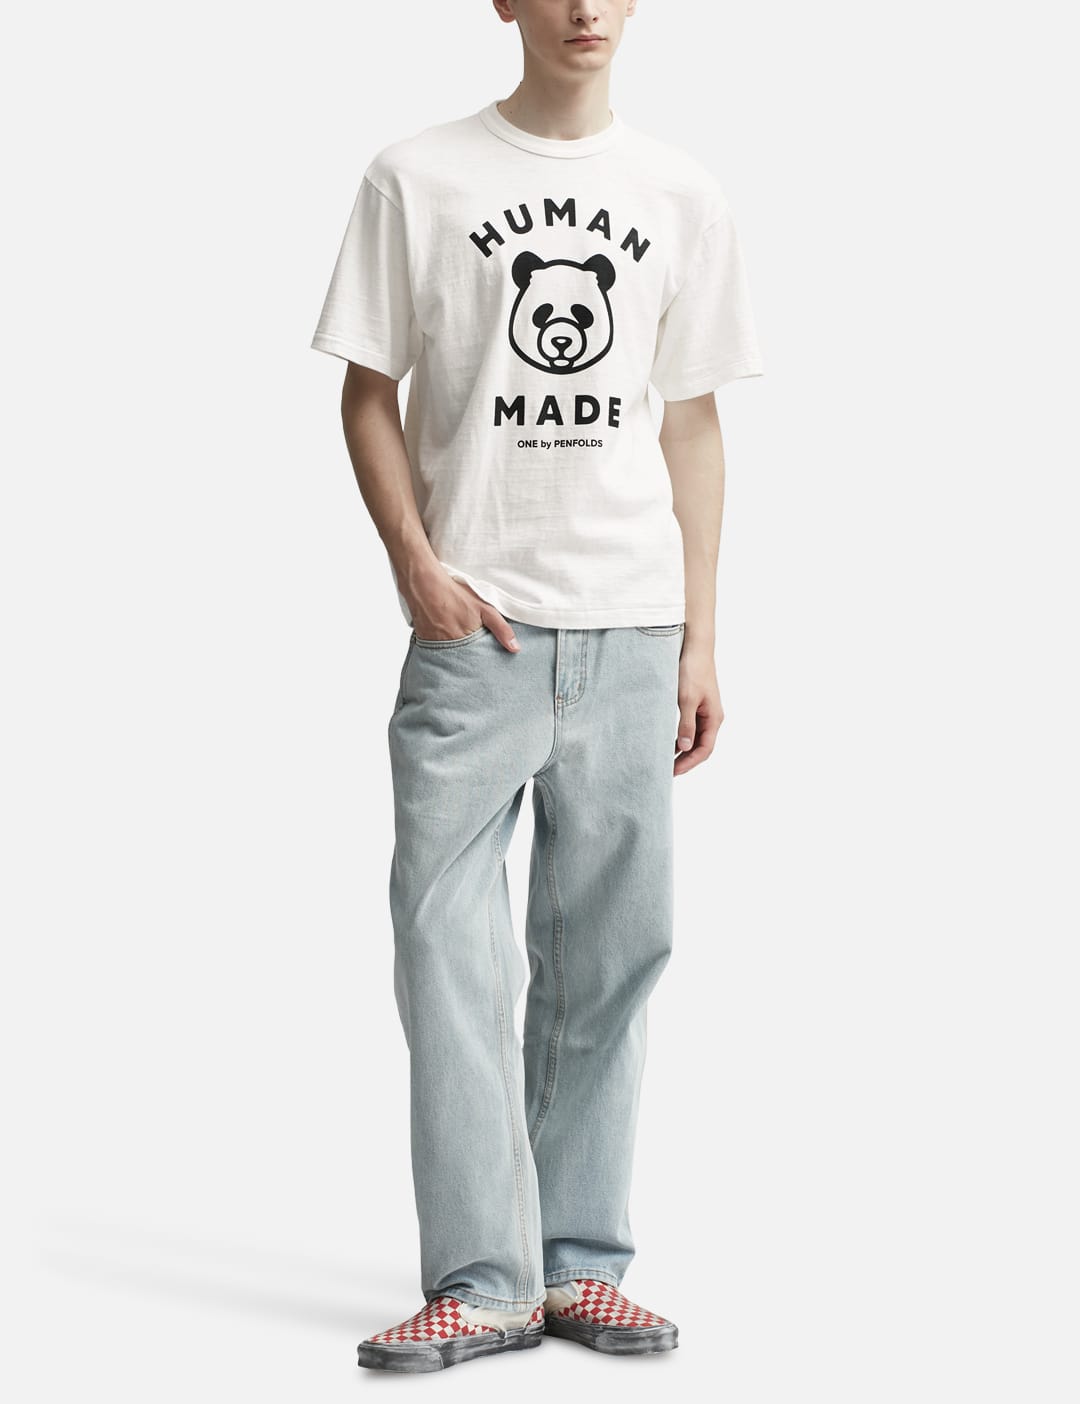 Human Made - ワン バイ ペンフォールズ パンダ Tシャツ | HBX ...